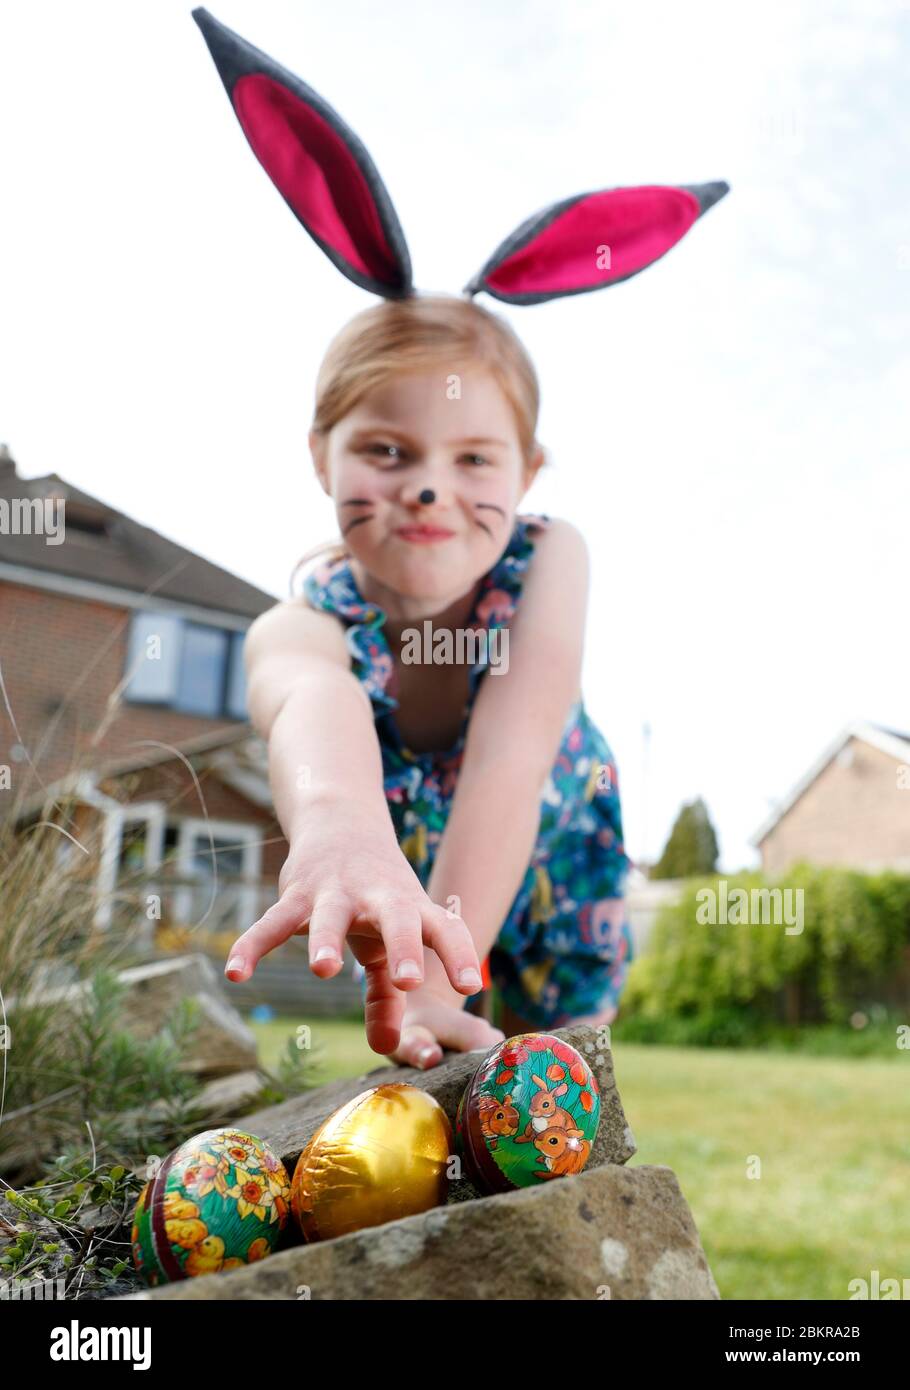 Une jeune fille portant une peinture faciale et des oreilles de lapin maison, participe à une chasse aux œufs le dimanche de Pâques dans son jardin. Banque D'Images